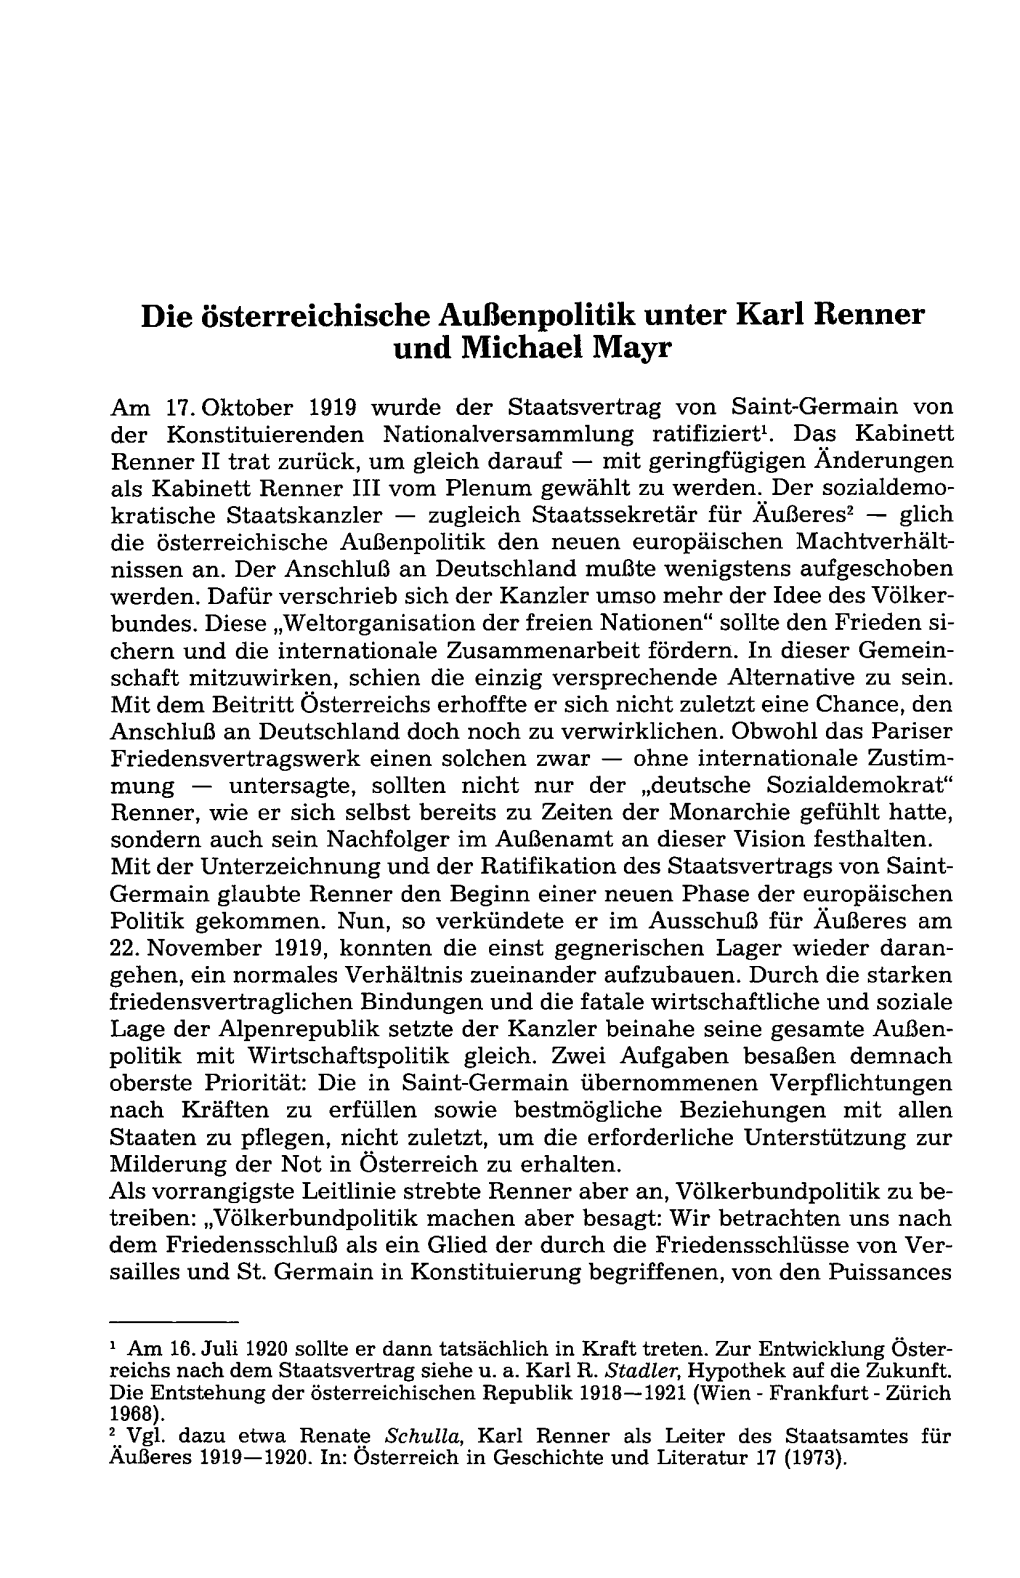 Die Österreichische Außenpolitik Unter Karl Renner Und Michael Mayr